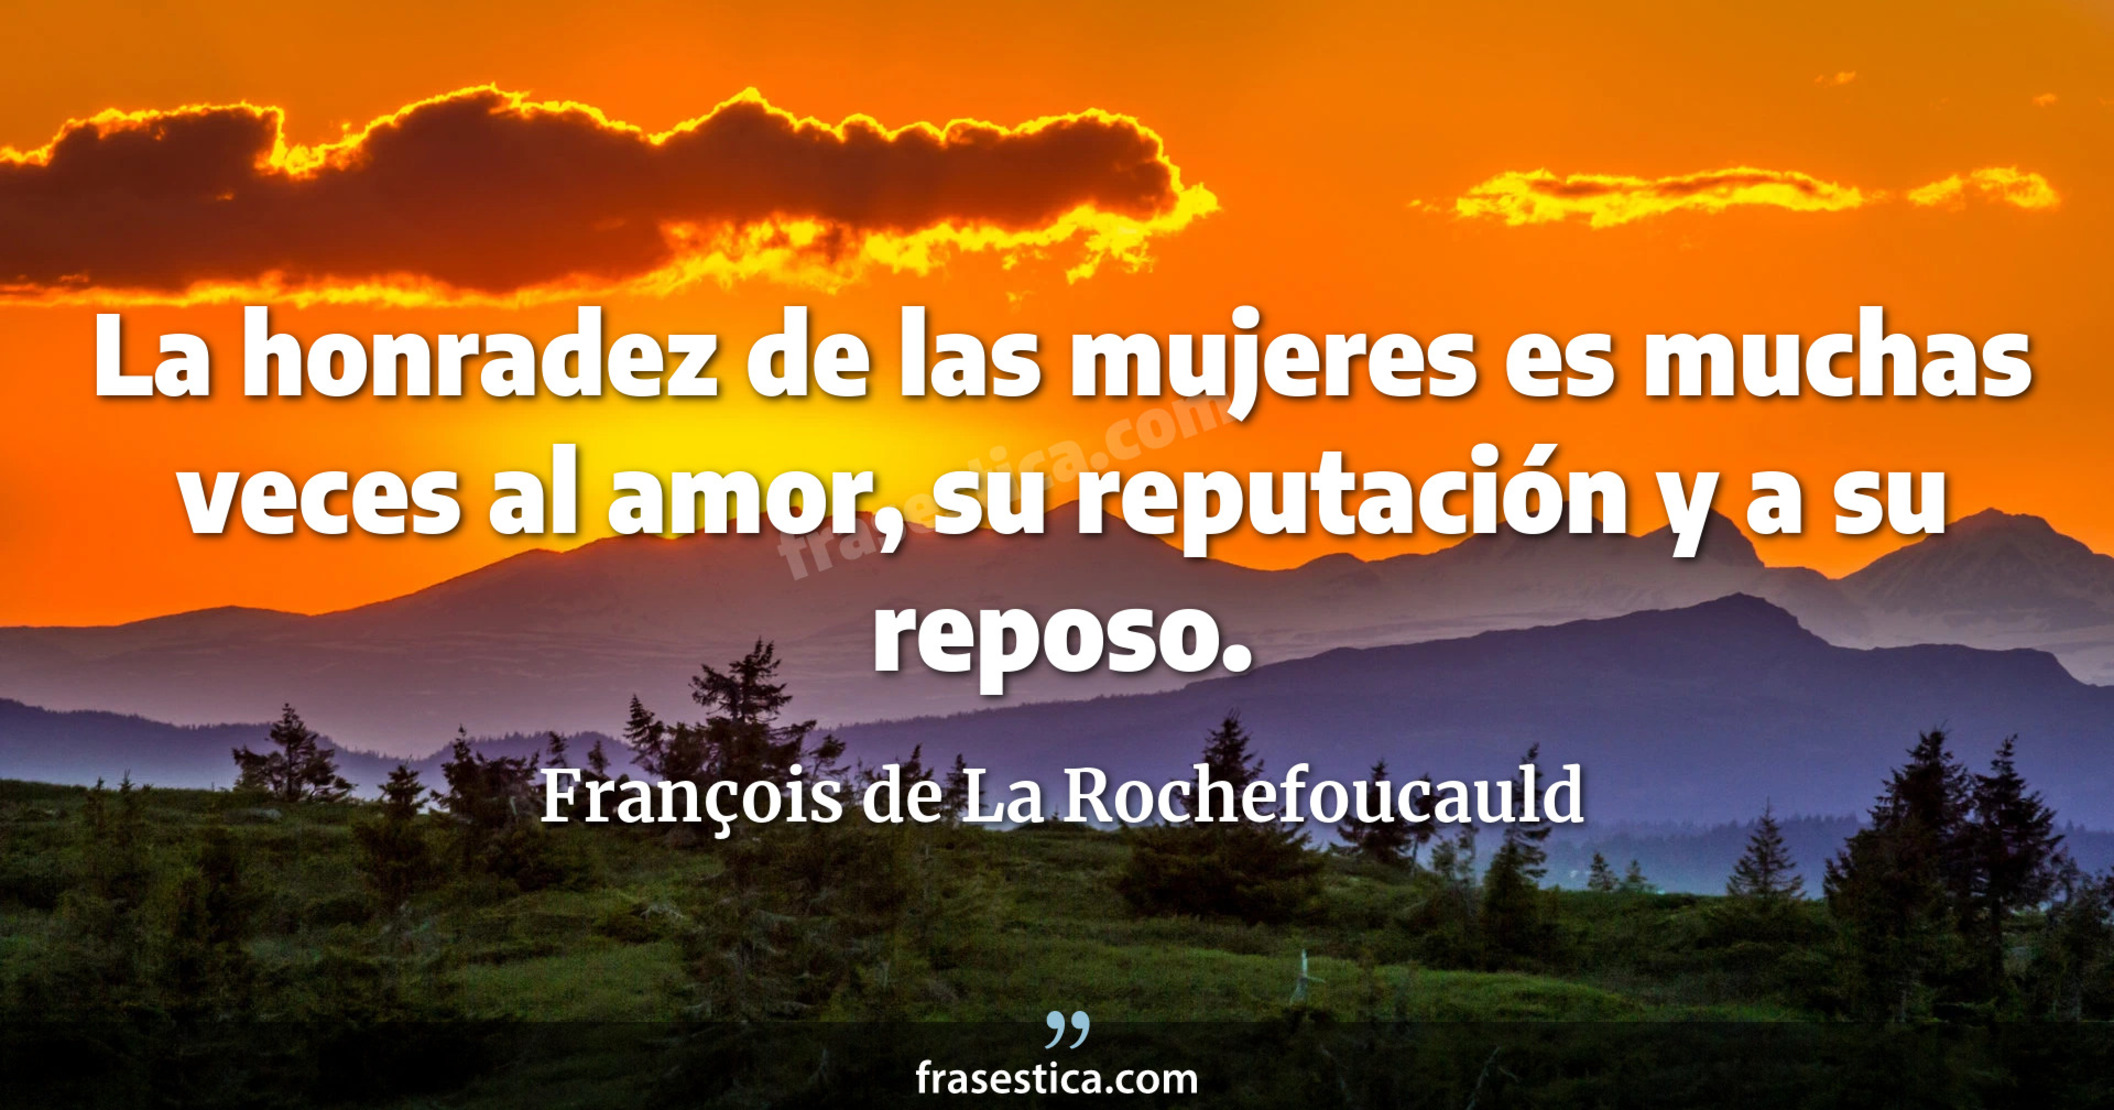 La honradez de las mujeres es muchas veces al amor, su reputación y a su reposo. - François de La Rochefoucauld